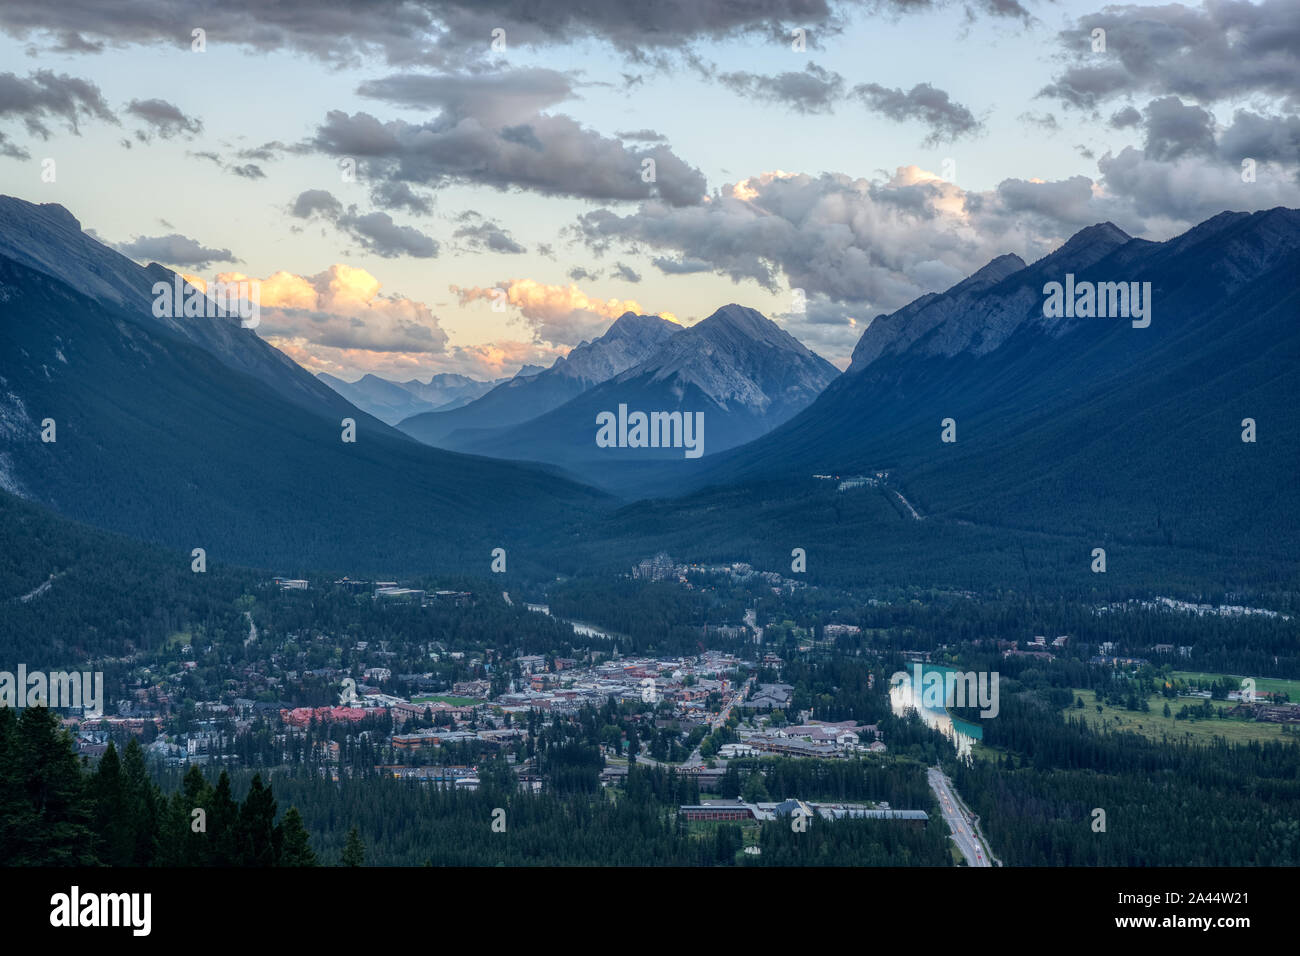 Schönen Blick auf Banff Resort Stadt mit Mount Rundle, Goatview Peak, und Schwefel Berg hoch über der Stadt, von Banff Viewpoint, Mount Stockfoto